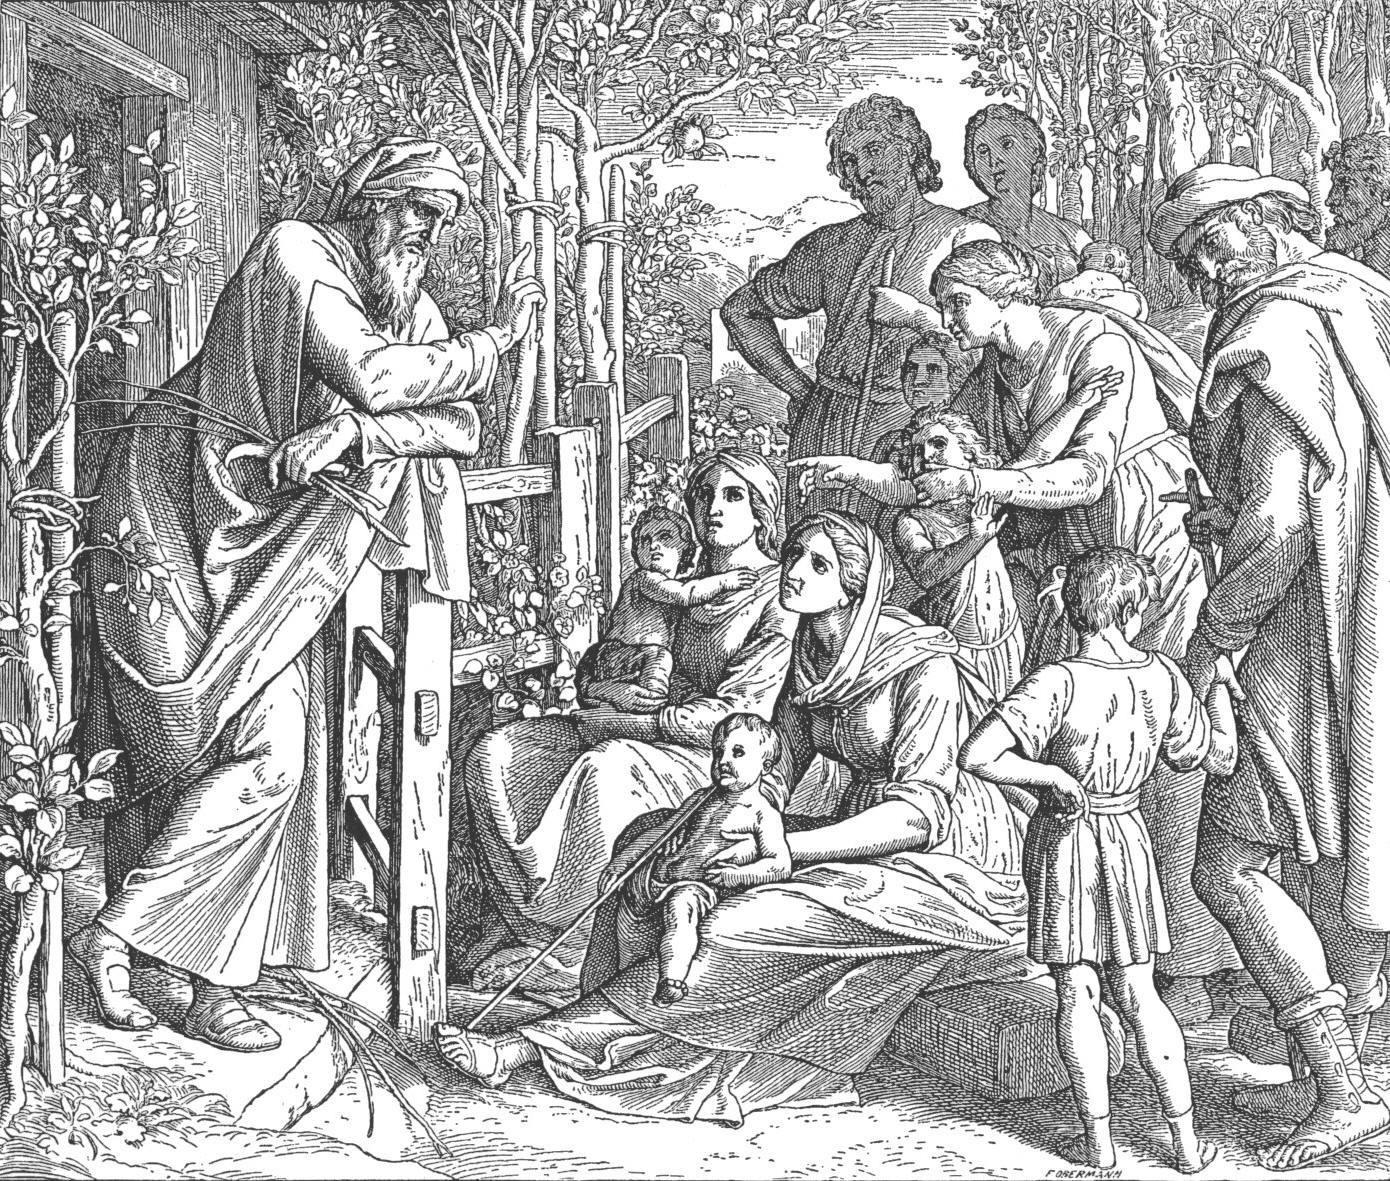 Ο Ιησούς γιος του Σειράχ (συγγραφέας του βιβλίου Σοφία Σειράχ) διδάσκει τον λαό. Σχέδιο του γερμανού ζωγράφου Julius Schnorr von Carolsfeld (1794-1872).